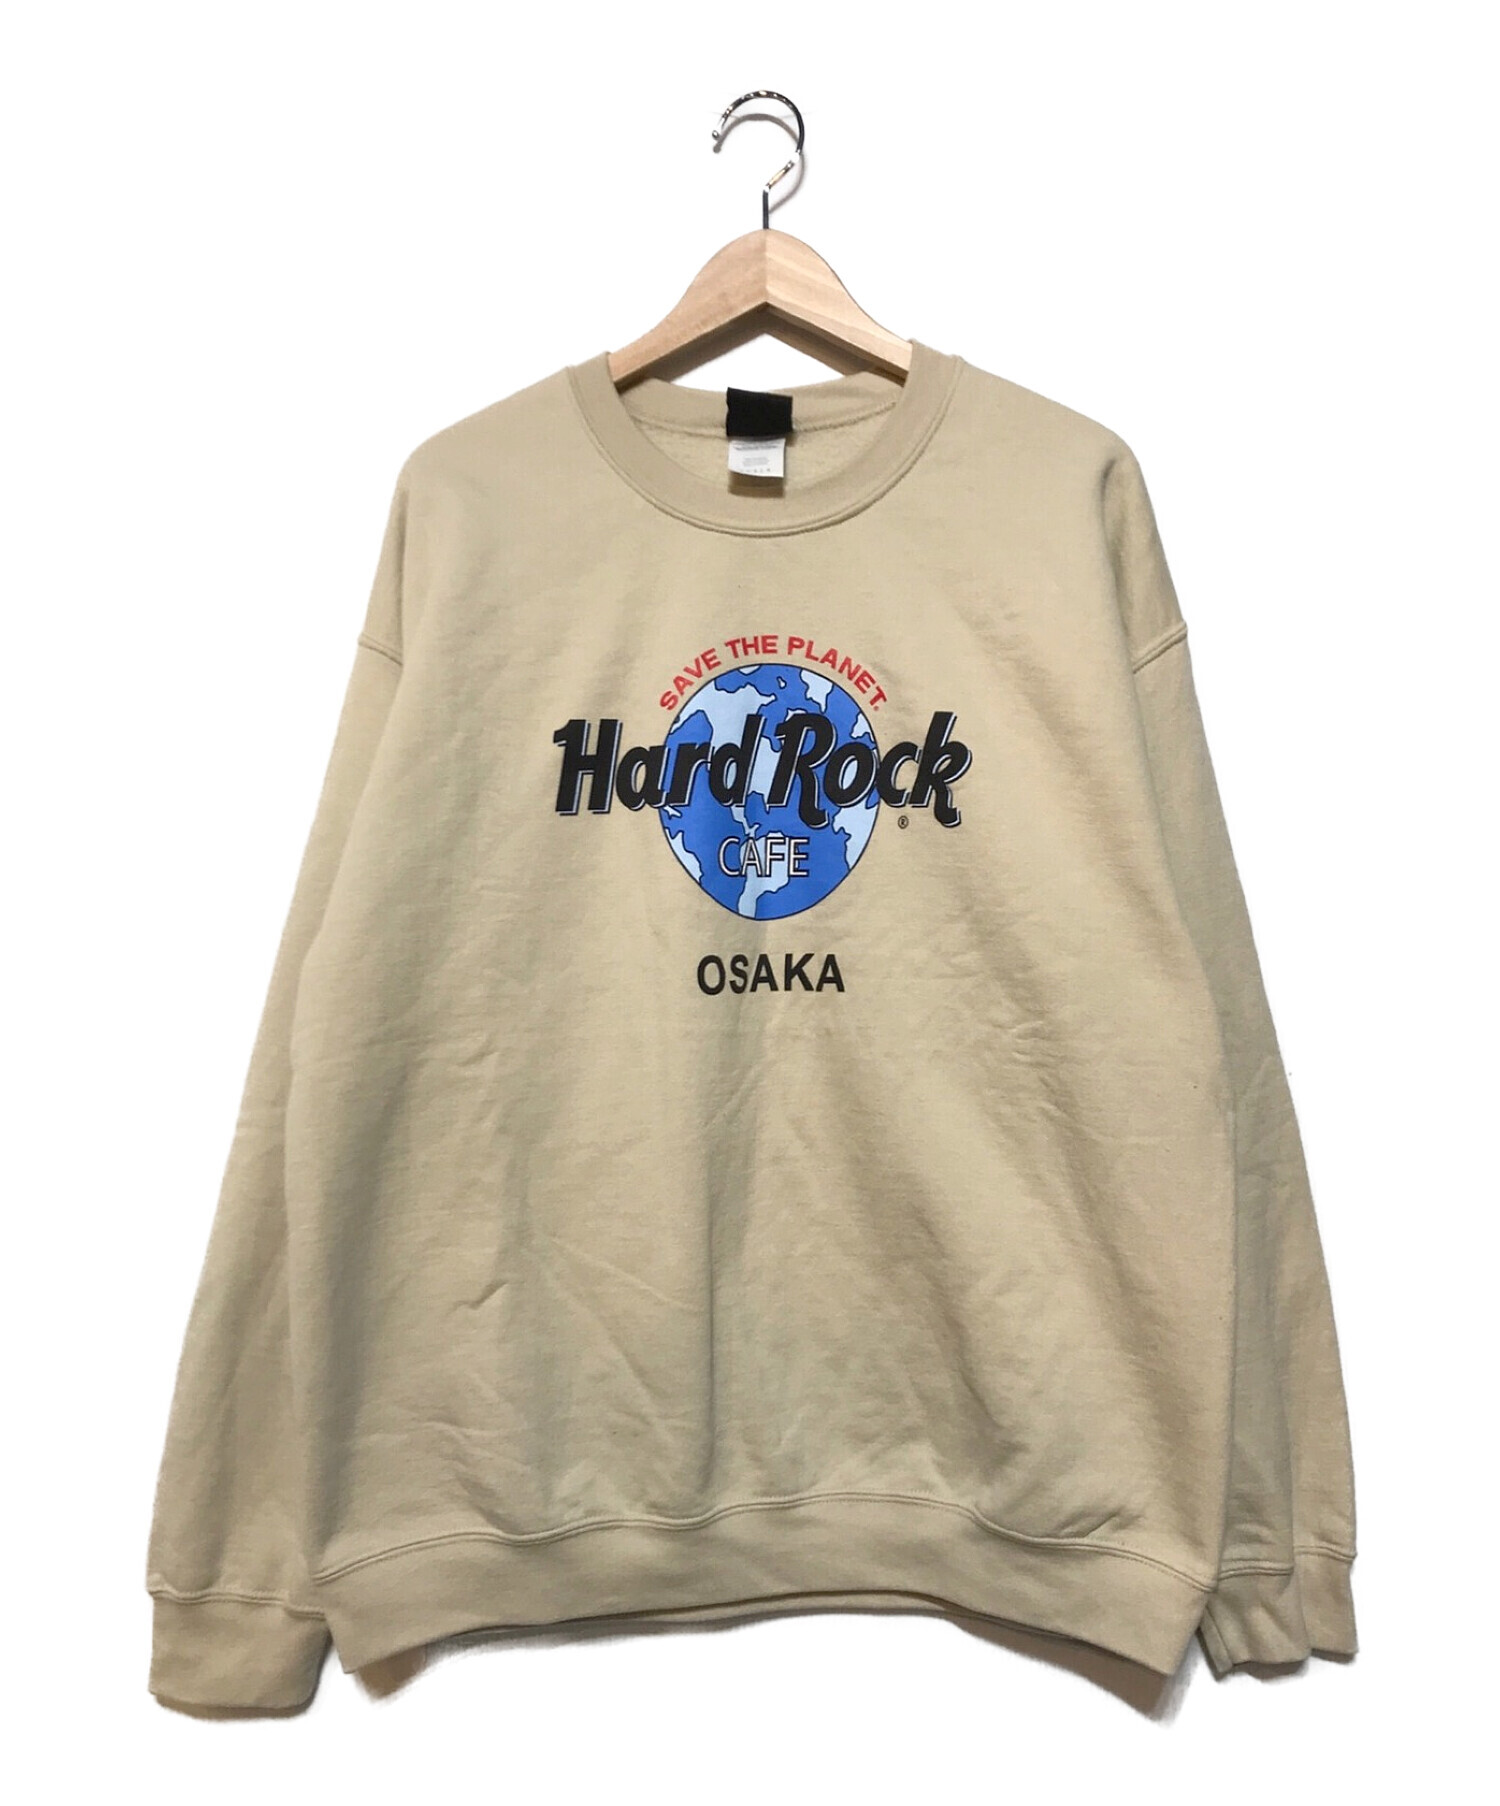 Hard Rock cafe (ハードロックカフェ) 【OLD】クルーネックスウェット ベージュ サイズ:L